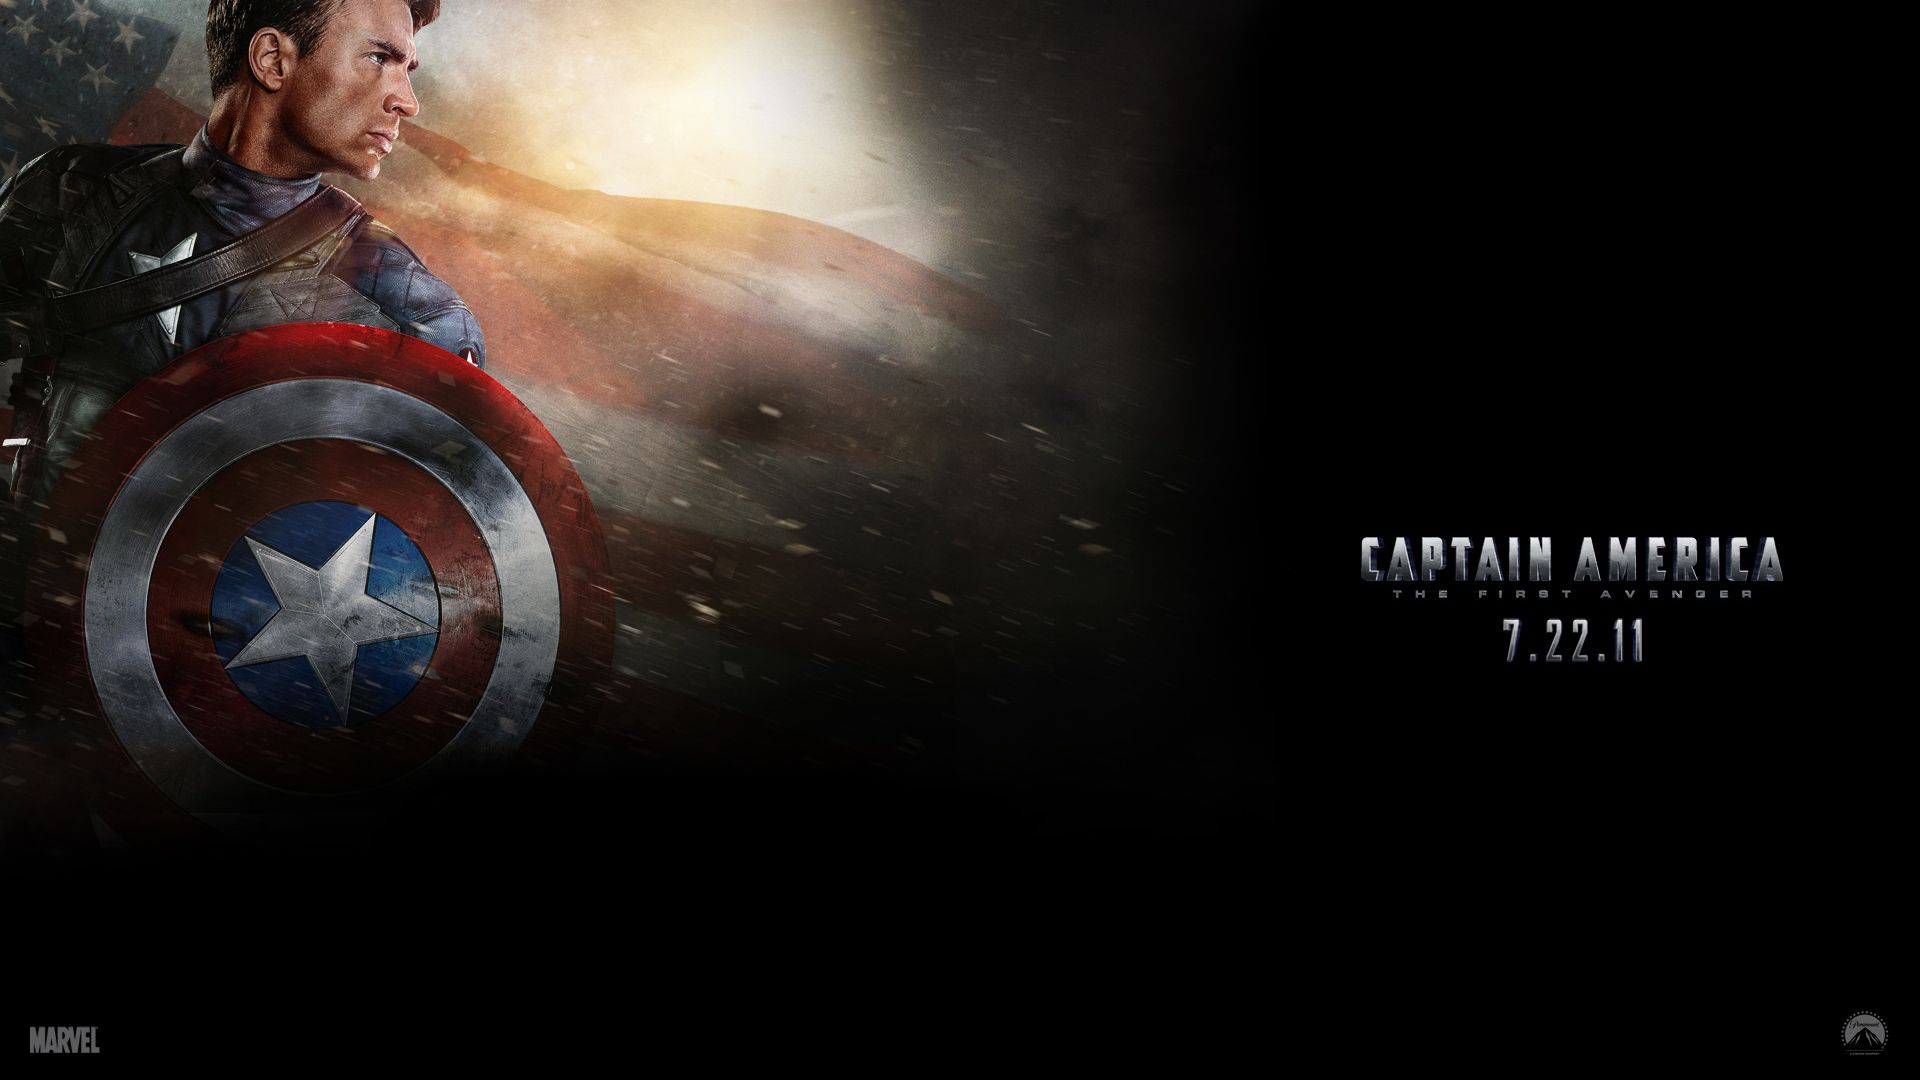 Captain America the First Avenger Background. Captain America Wallpaper, Captain Rex Wallpaper and Captain Marvel Wallpaper